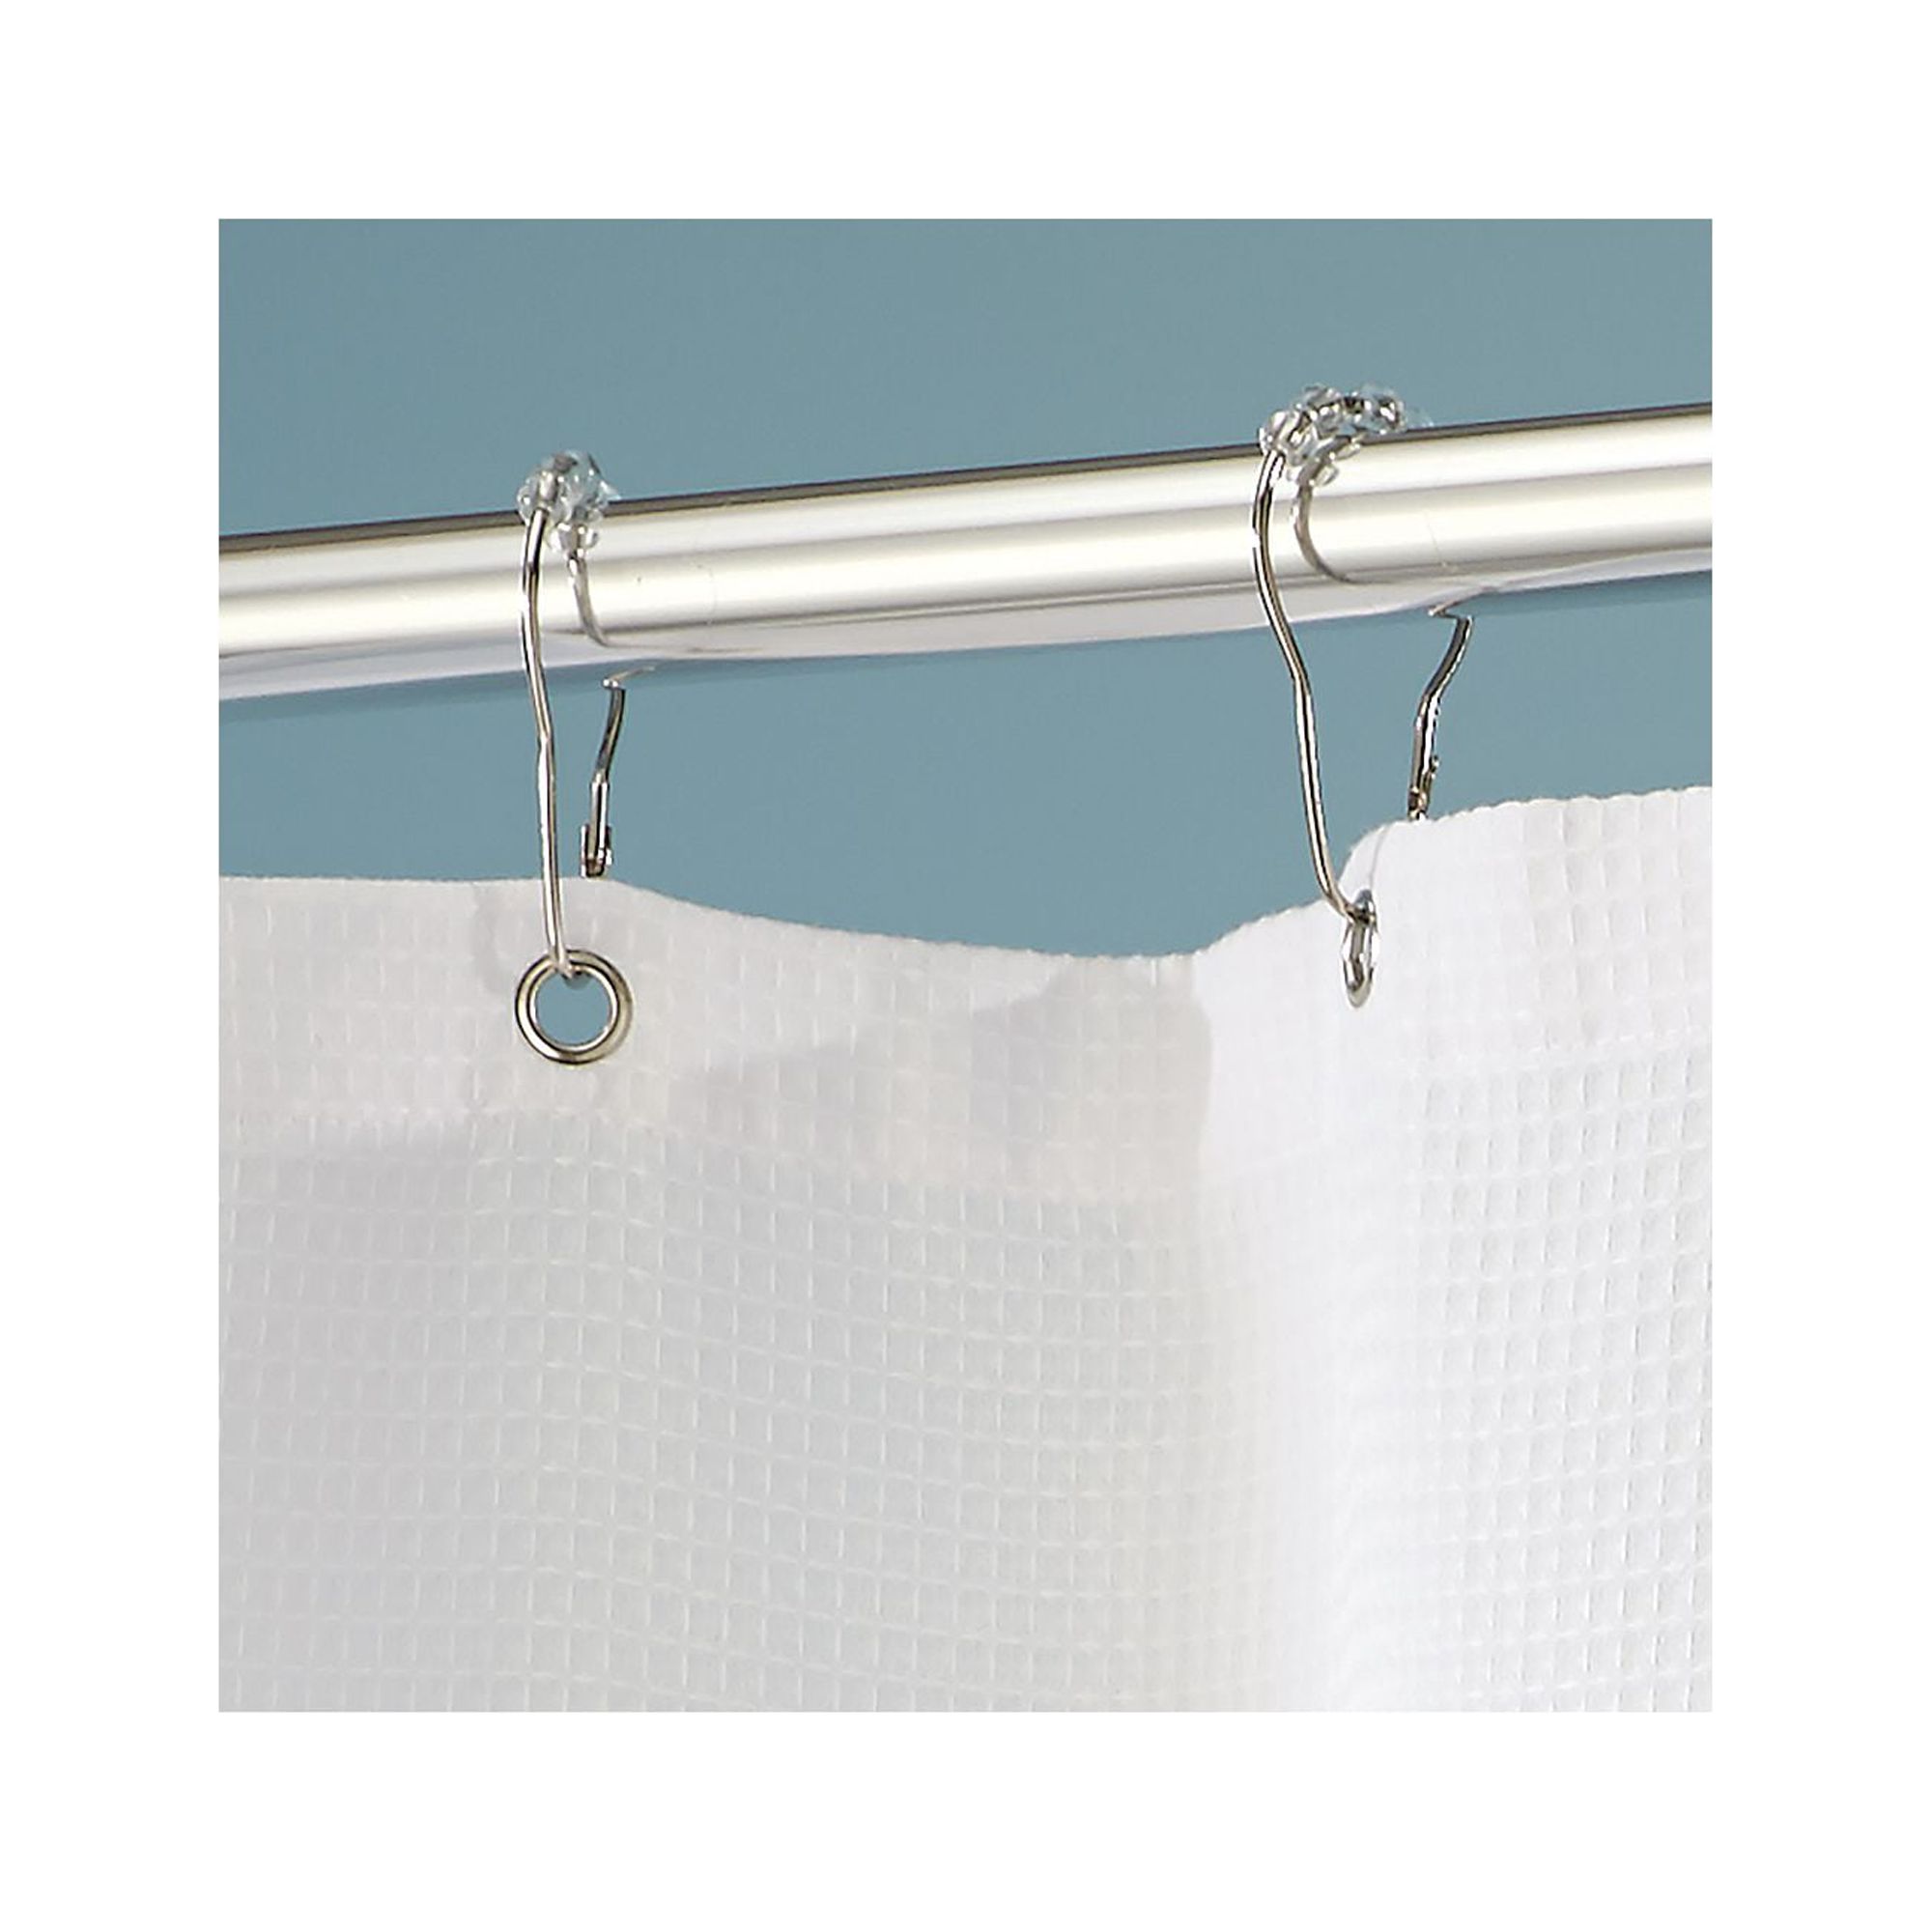 InterDesign York Fabric Shower Curtain, Standard, 72" x 72", White - image 5 of 6